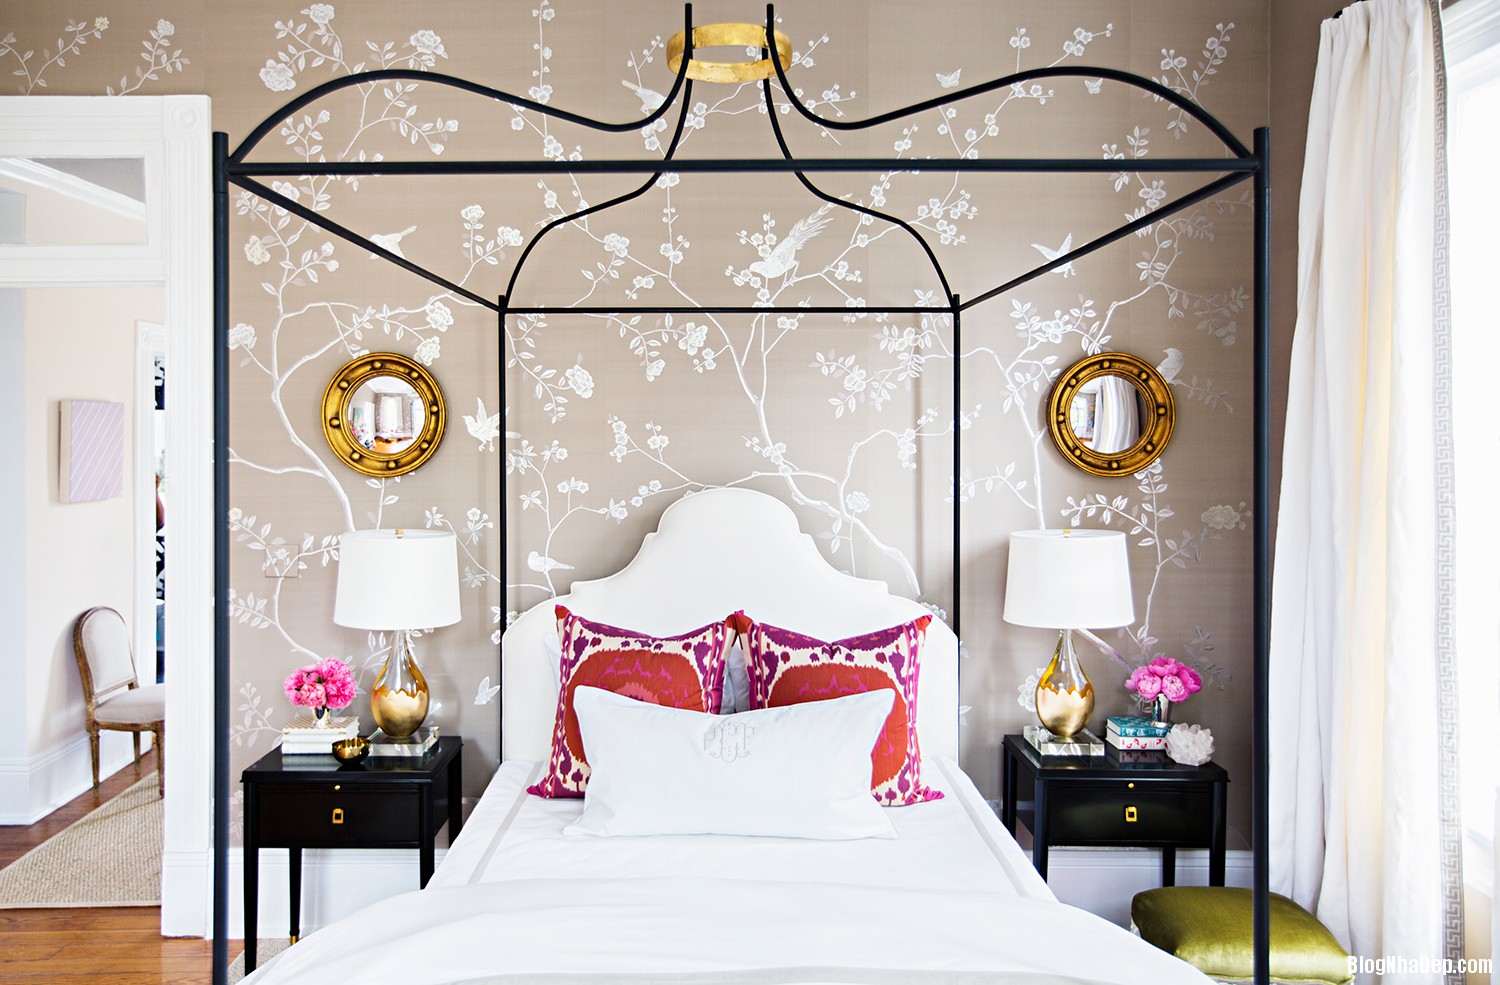 trang tri phong ngu nu tinh voi thiet ke hoa la cach die 006 Thiết kế họa tiết trên tường khiến phòng ngủ ấn tượng hơn